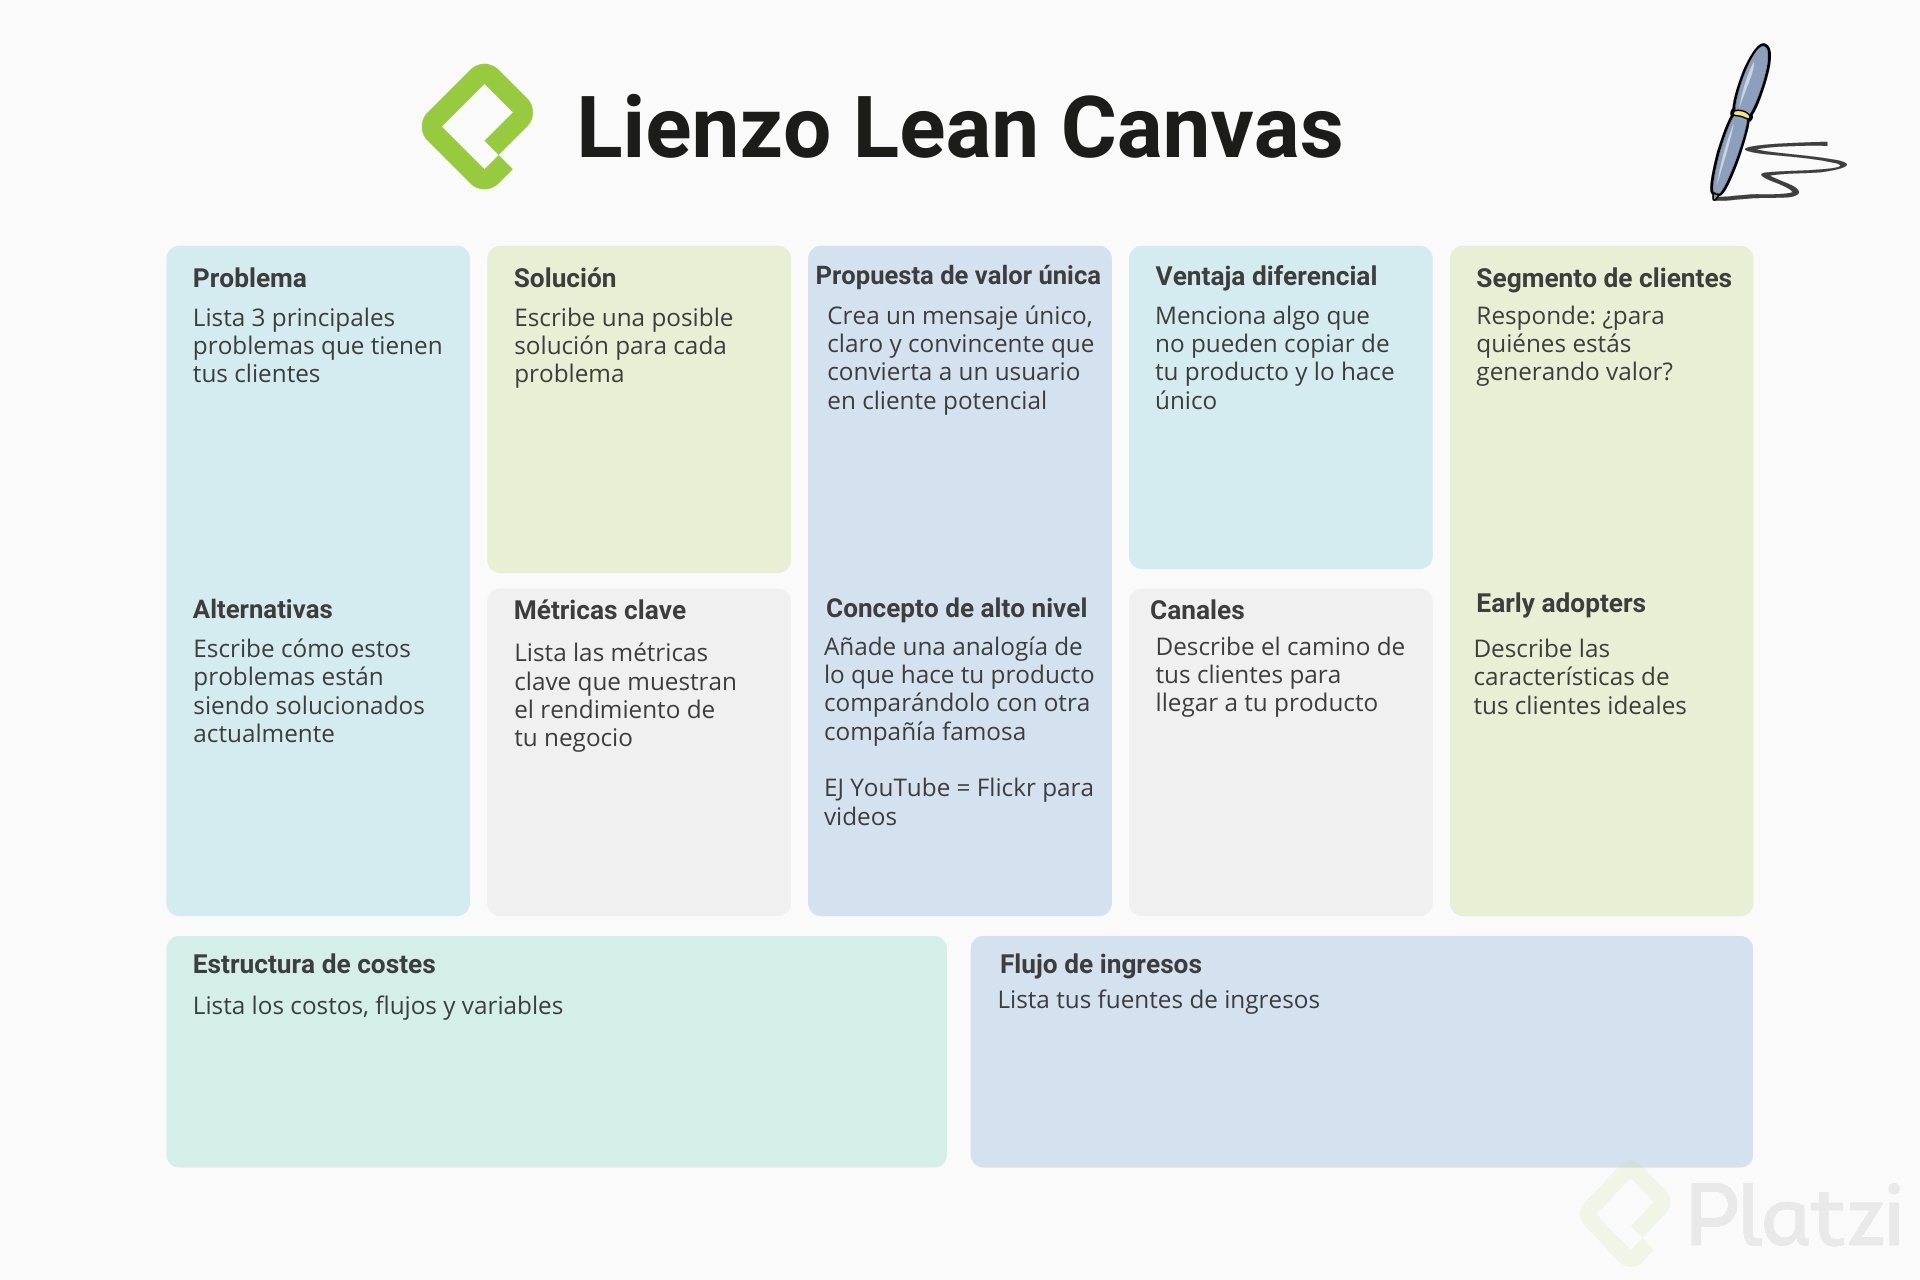 Aplica el Lienzo Lean Canvas con 3 ejemplos exitosos